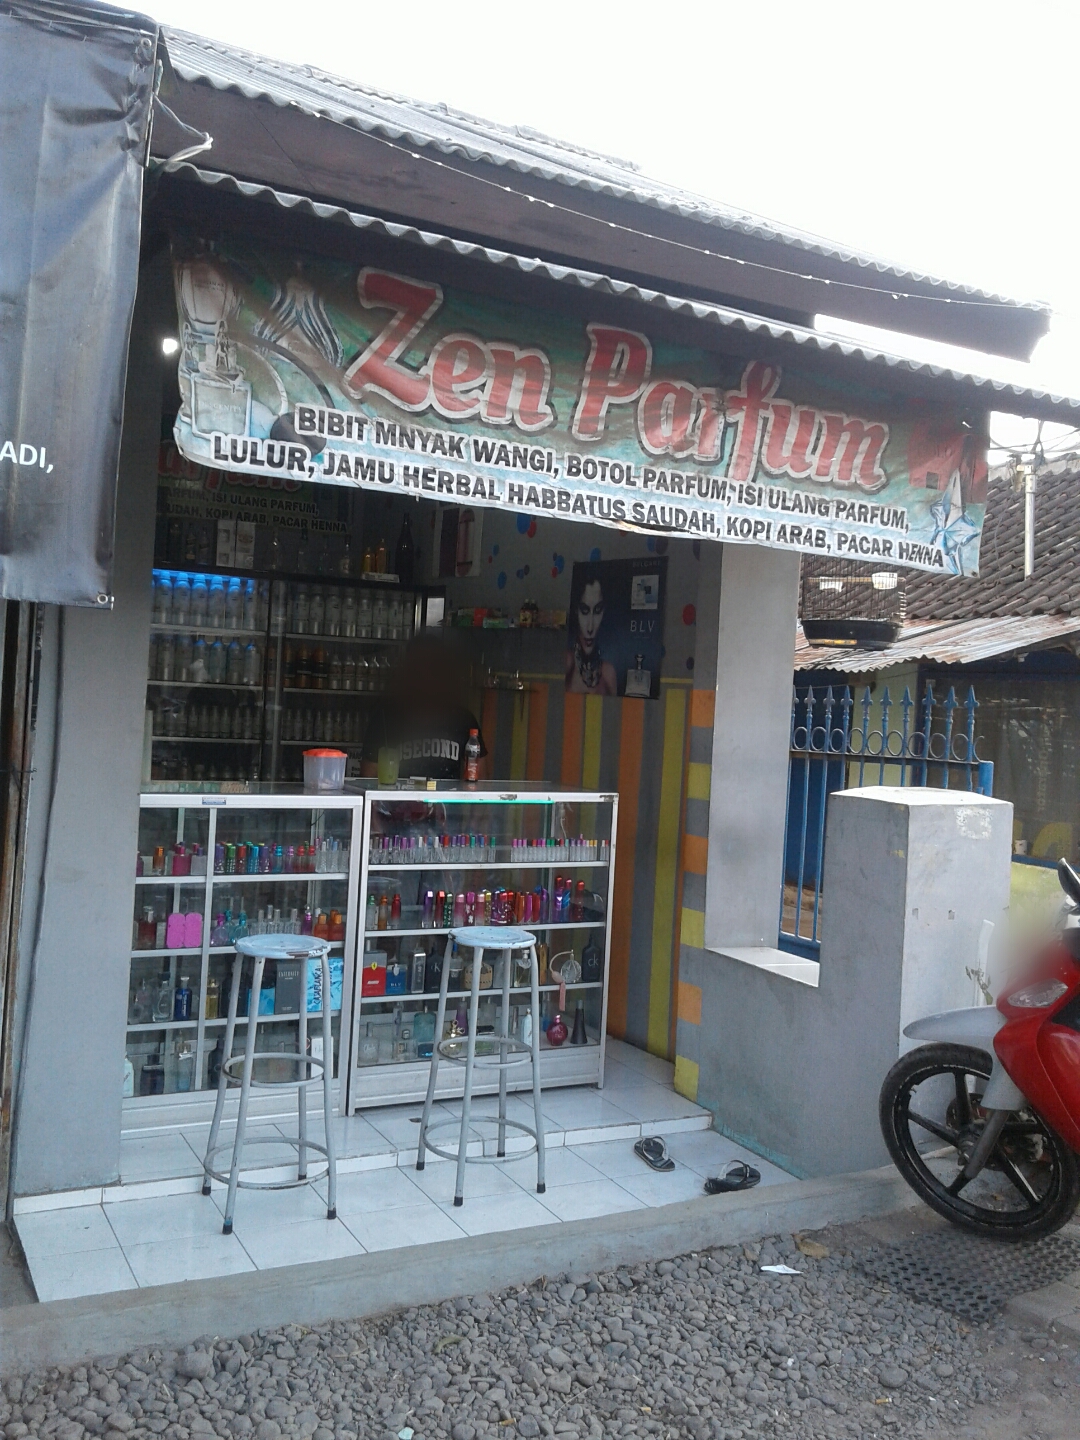 Zen Parfum